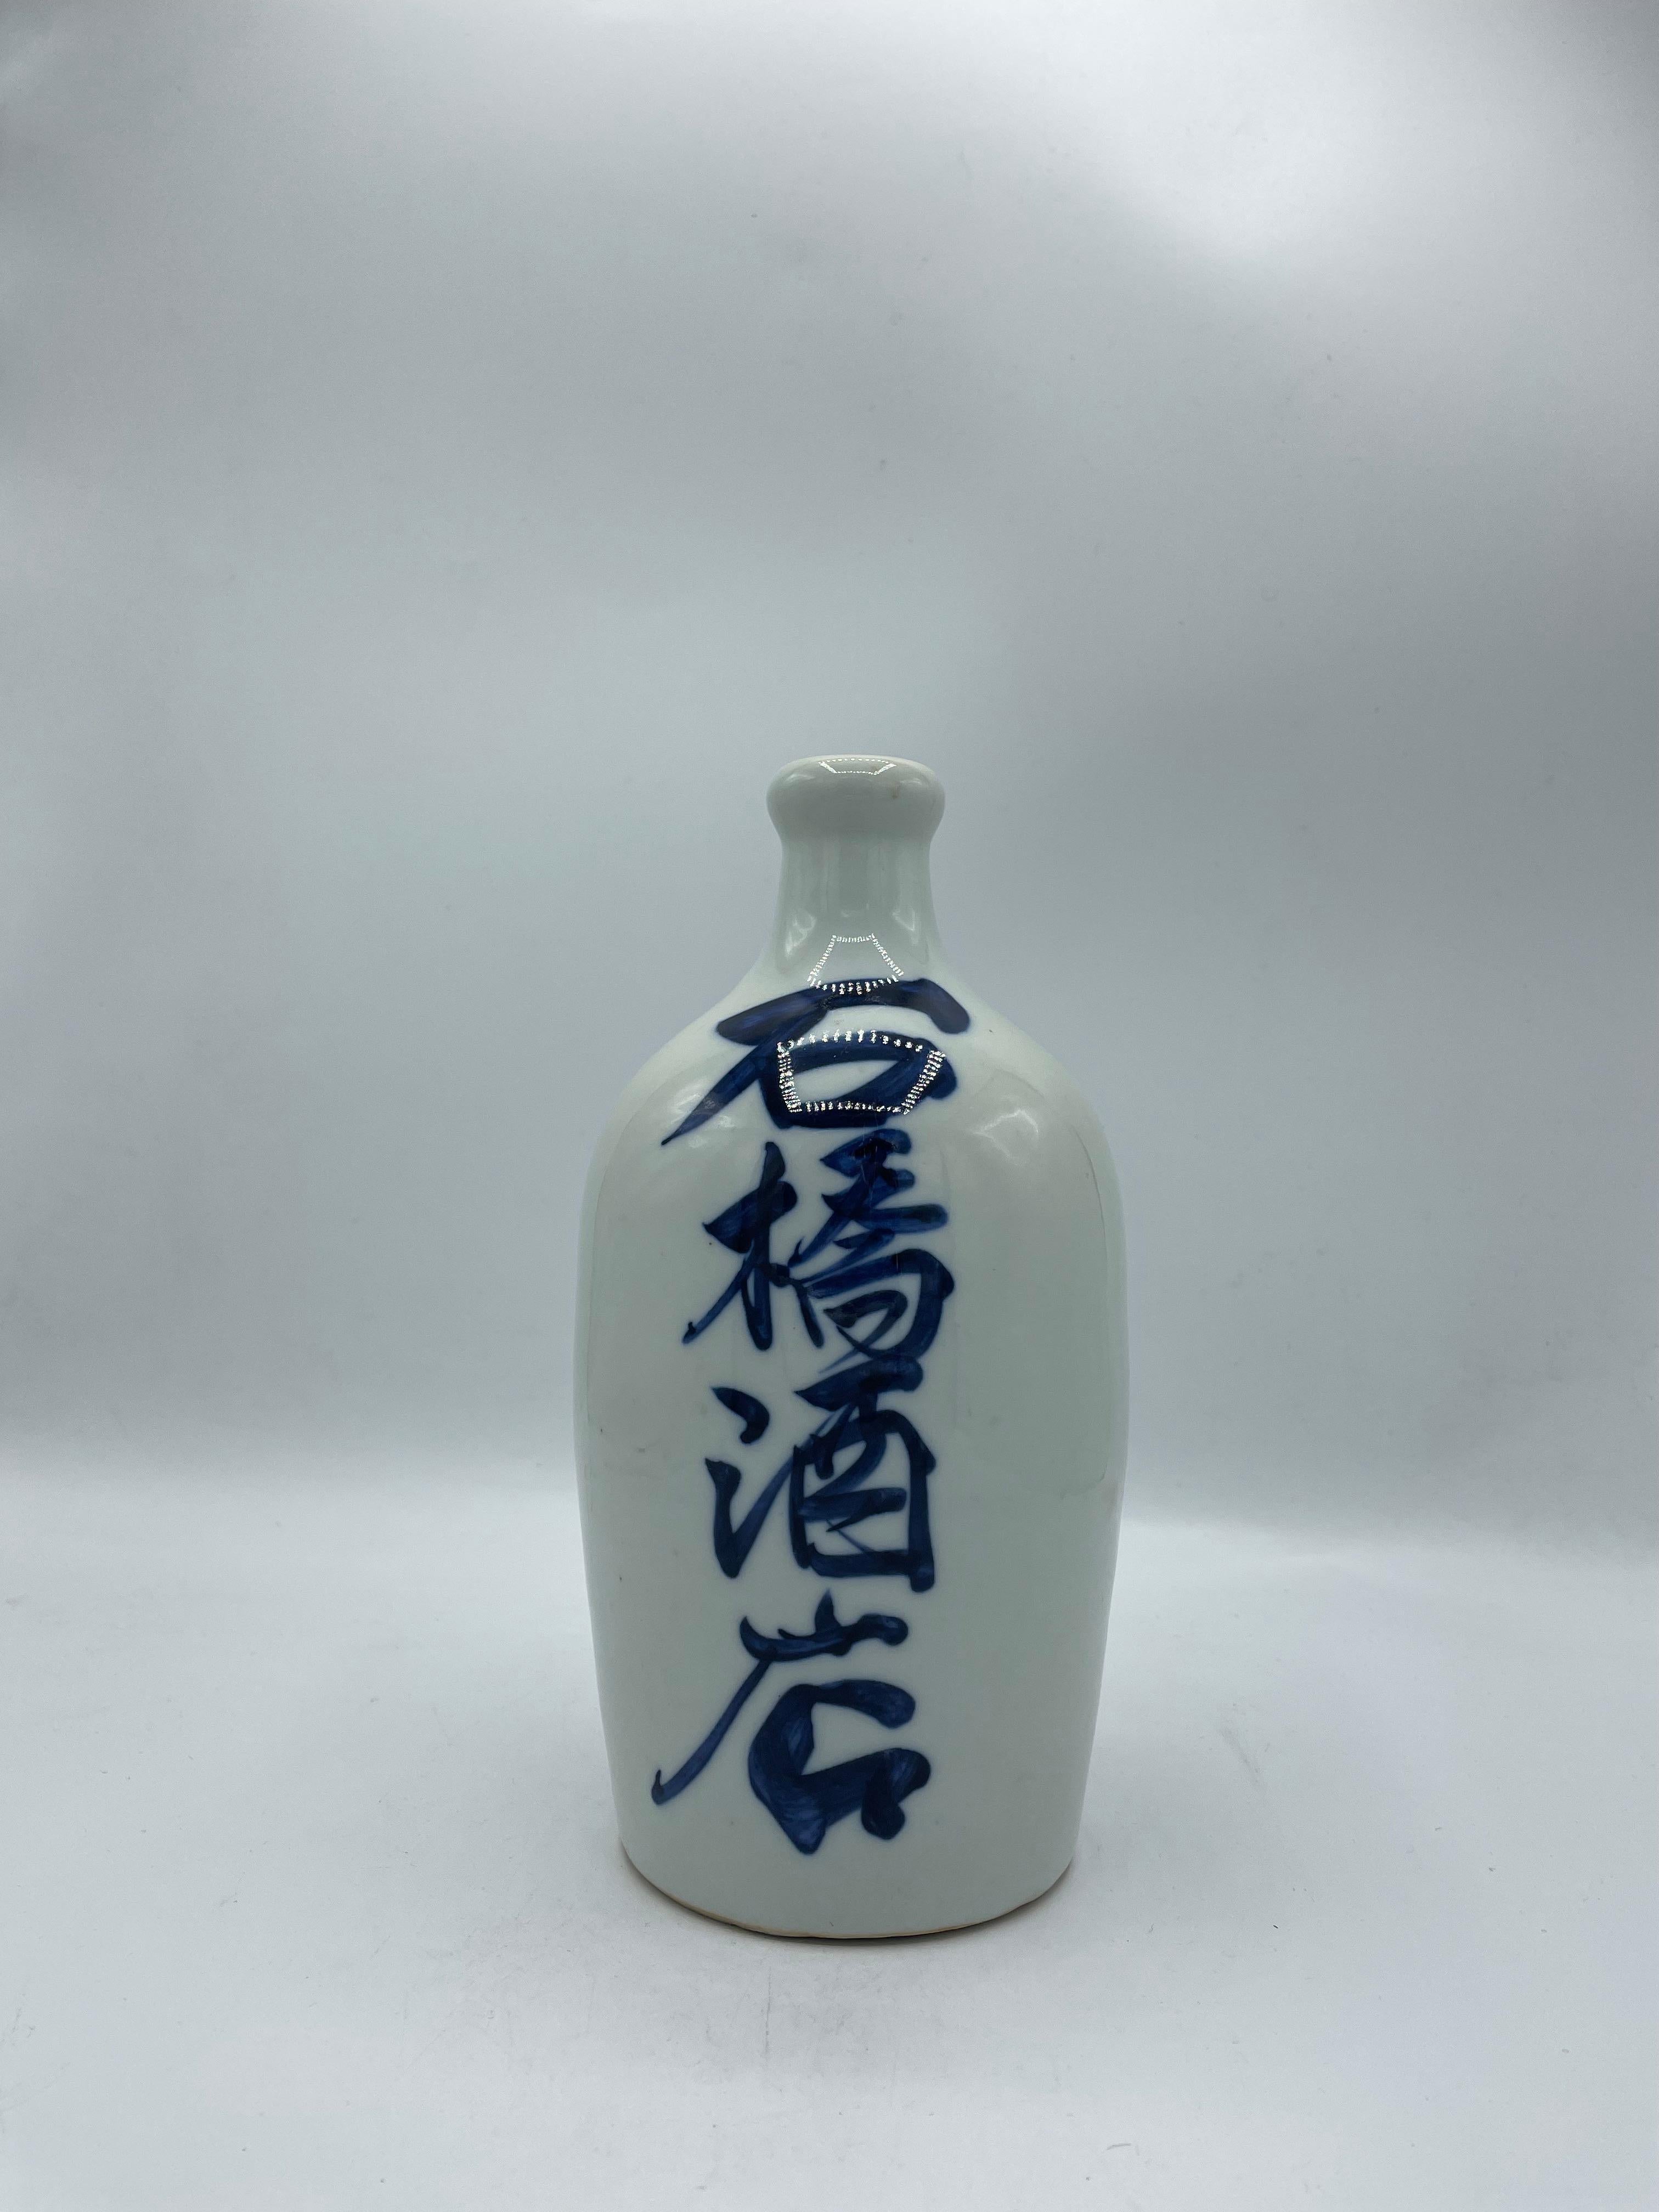 Hand-Painted Japanese Antique Sake Bottle 'Fukumusume' 1960s Showa era 